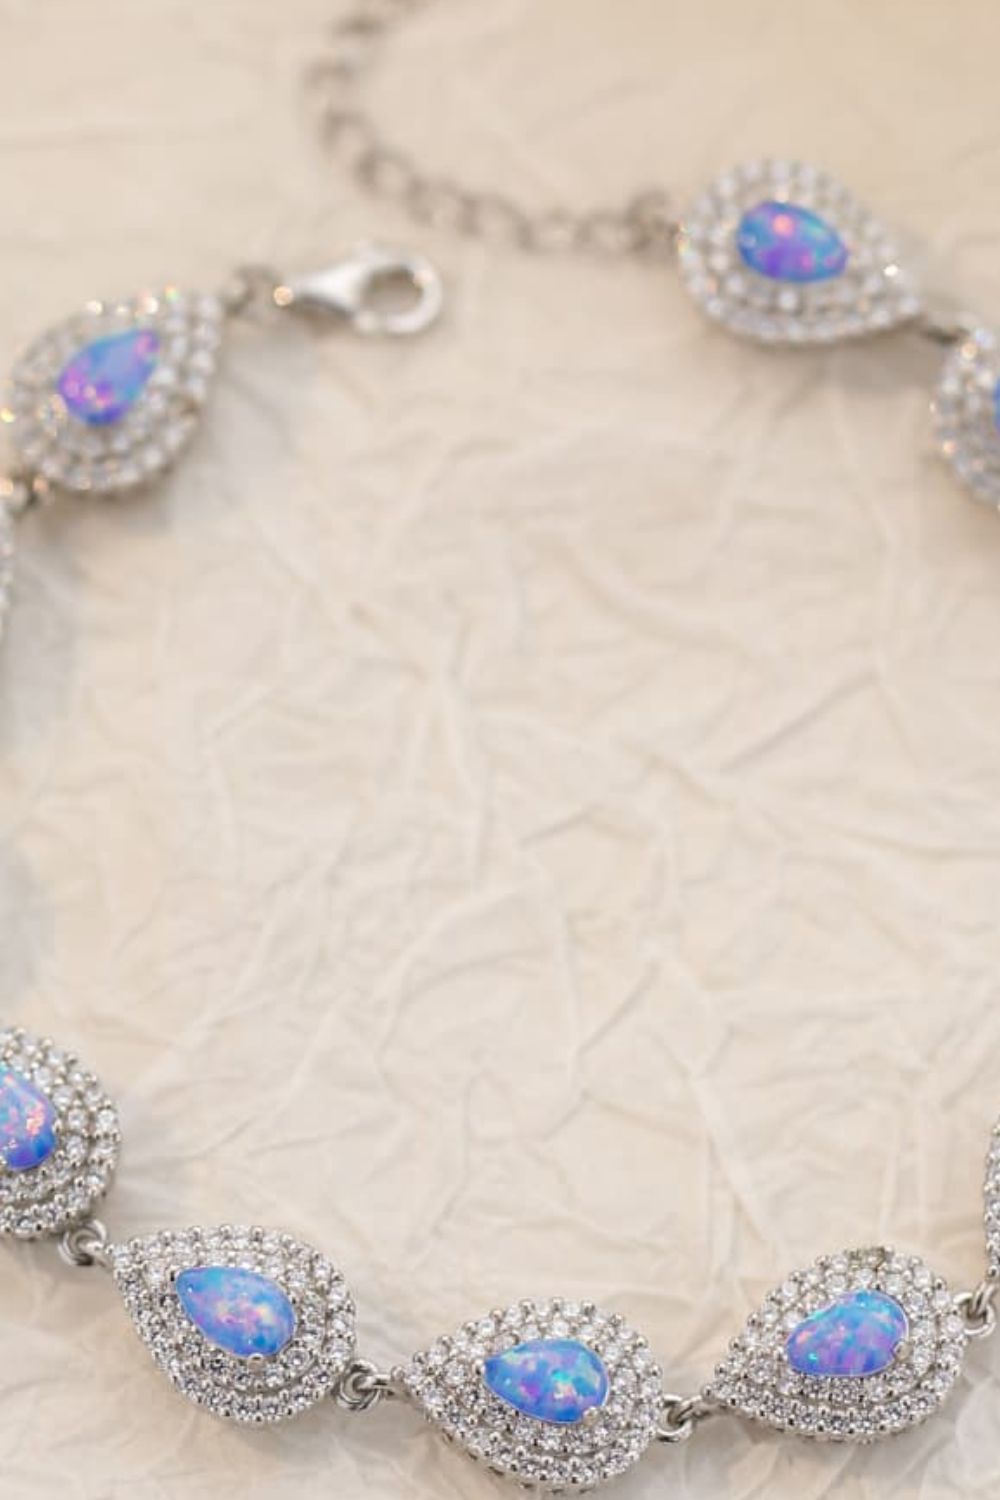 925 Sterling Silver Opal Bracelet - Shop women apparel, Jewelry, bath & beauty products online - Arwen's Boutique